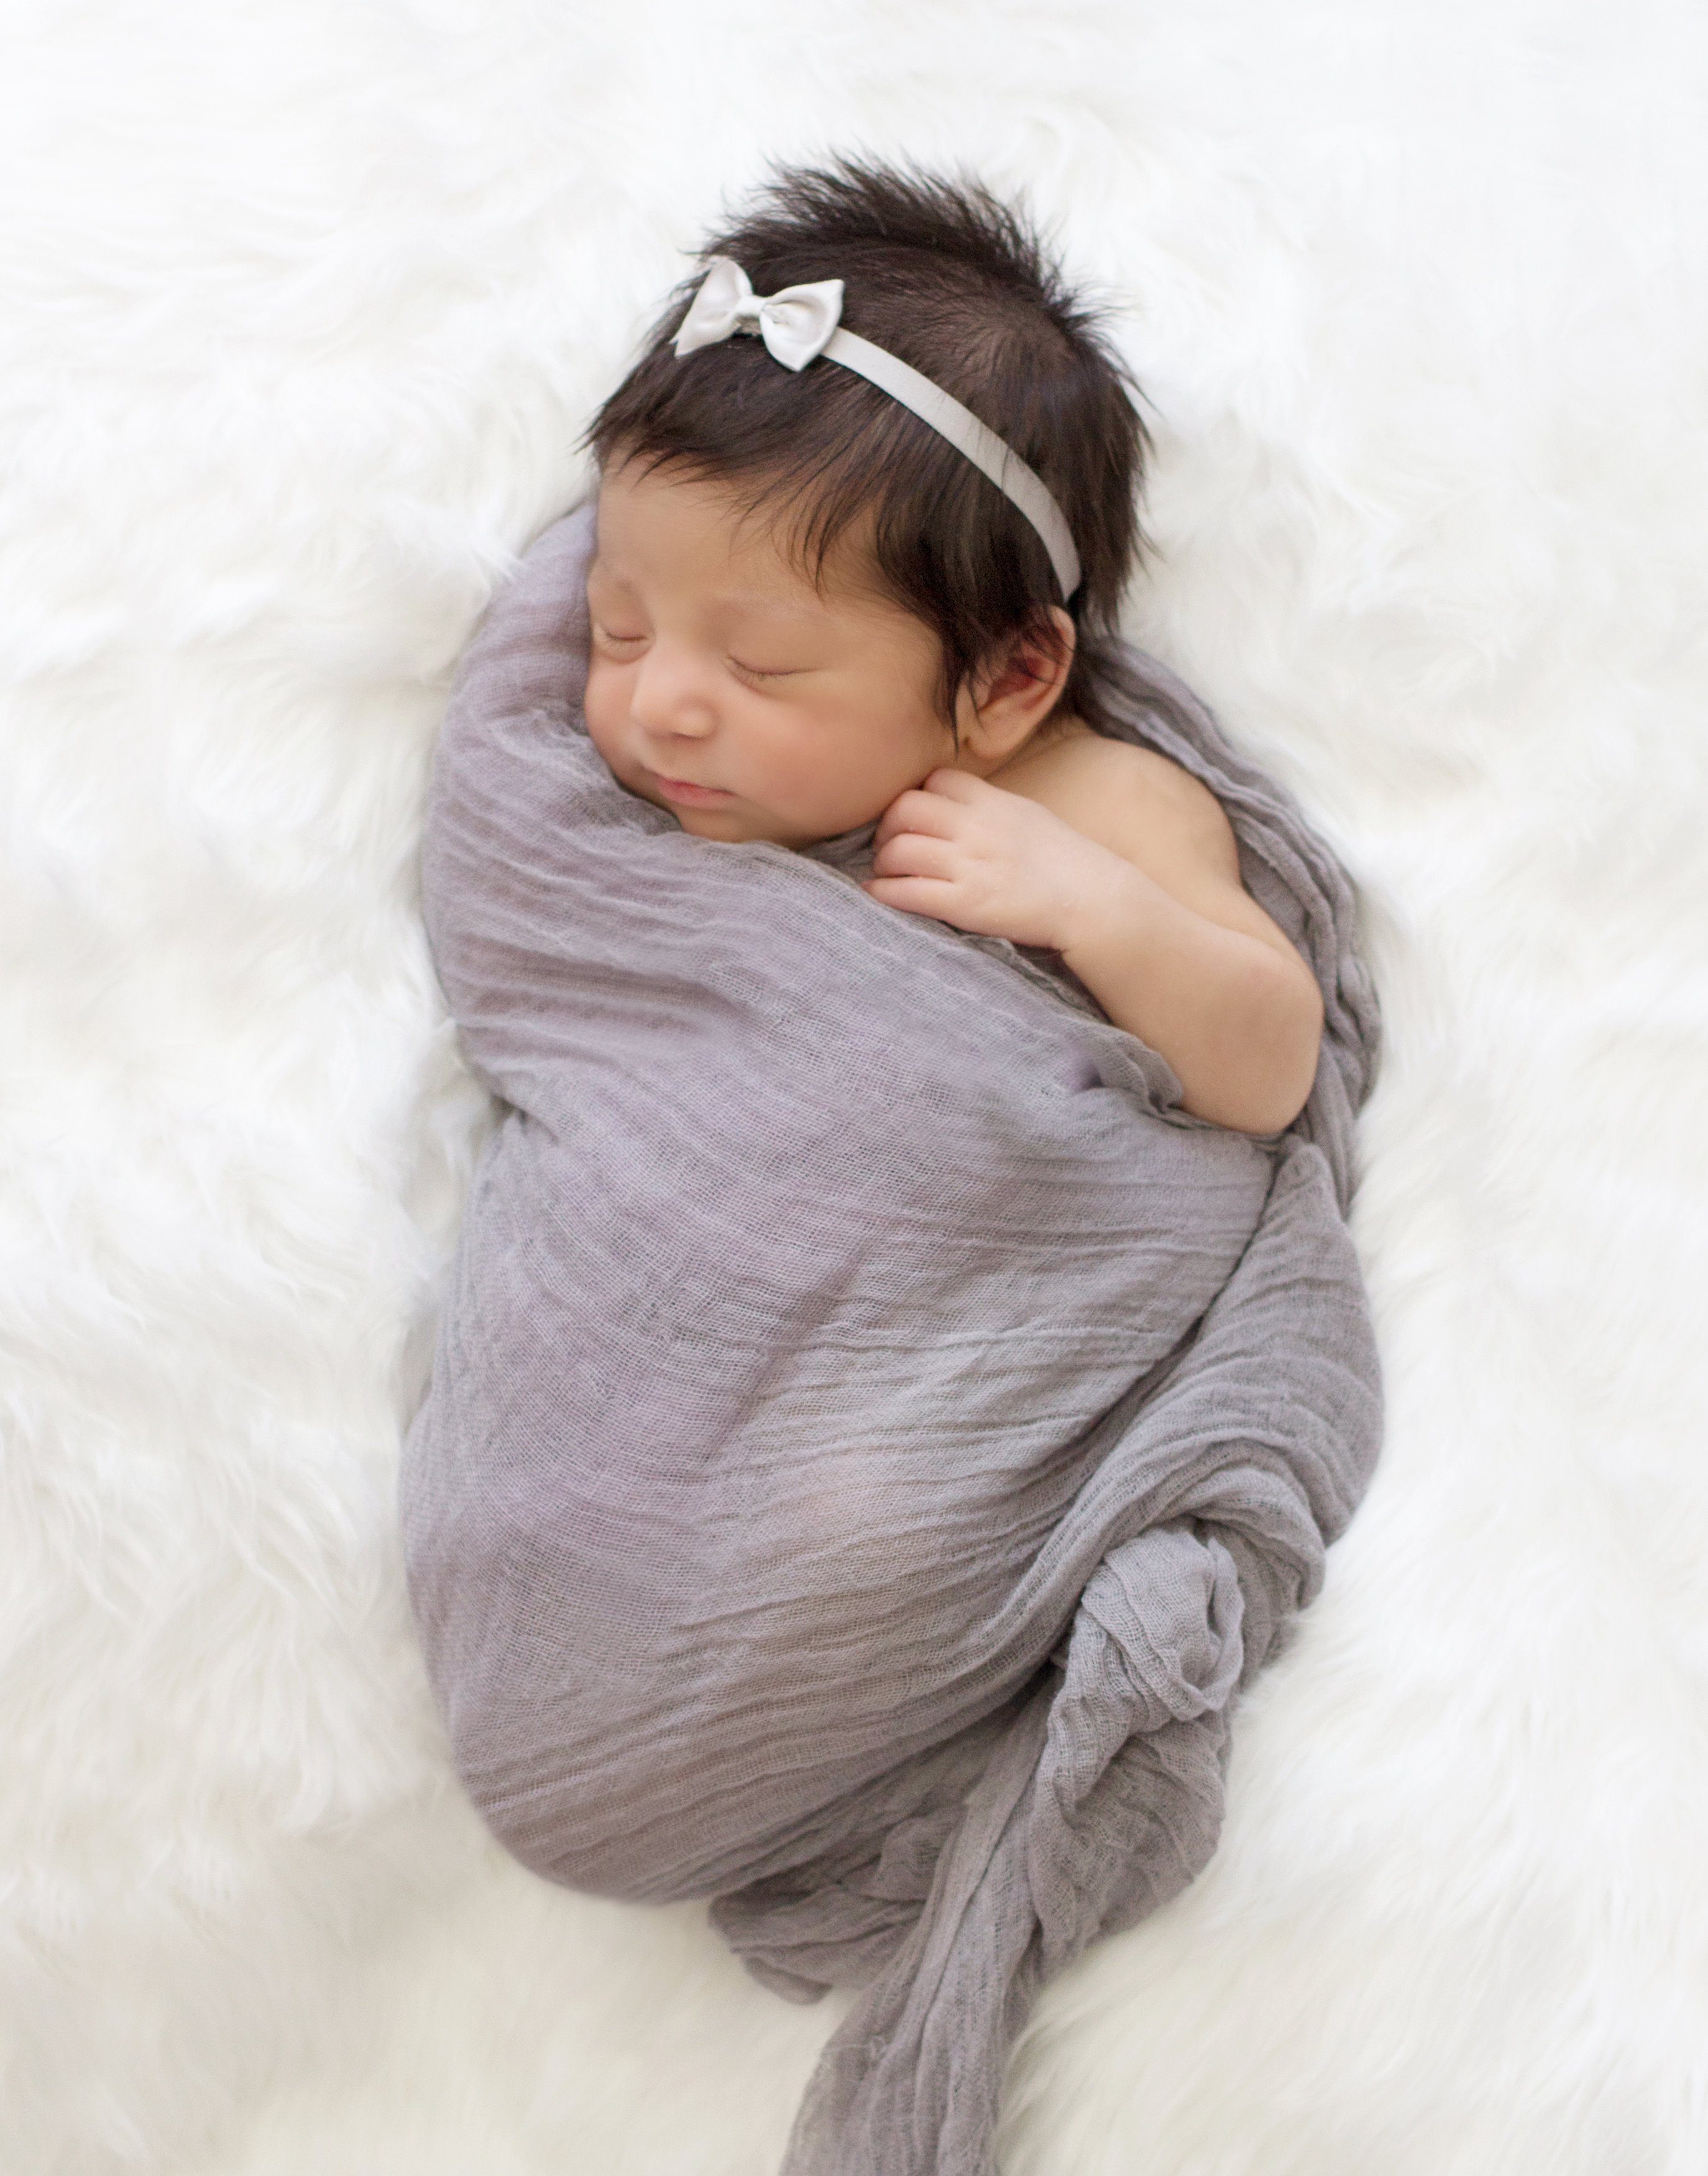 Com ajudar a adormir un nadó amb còlics